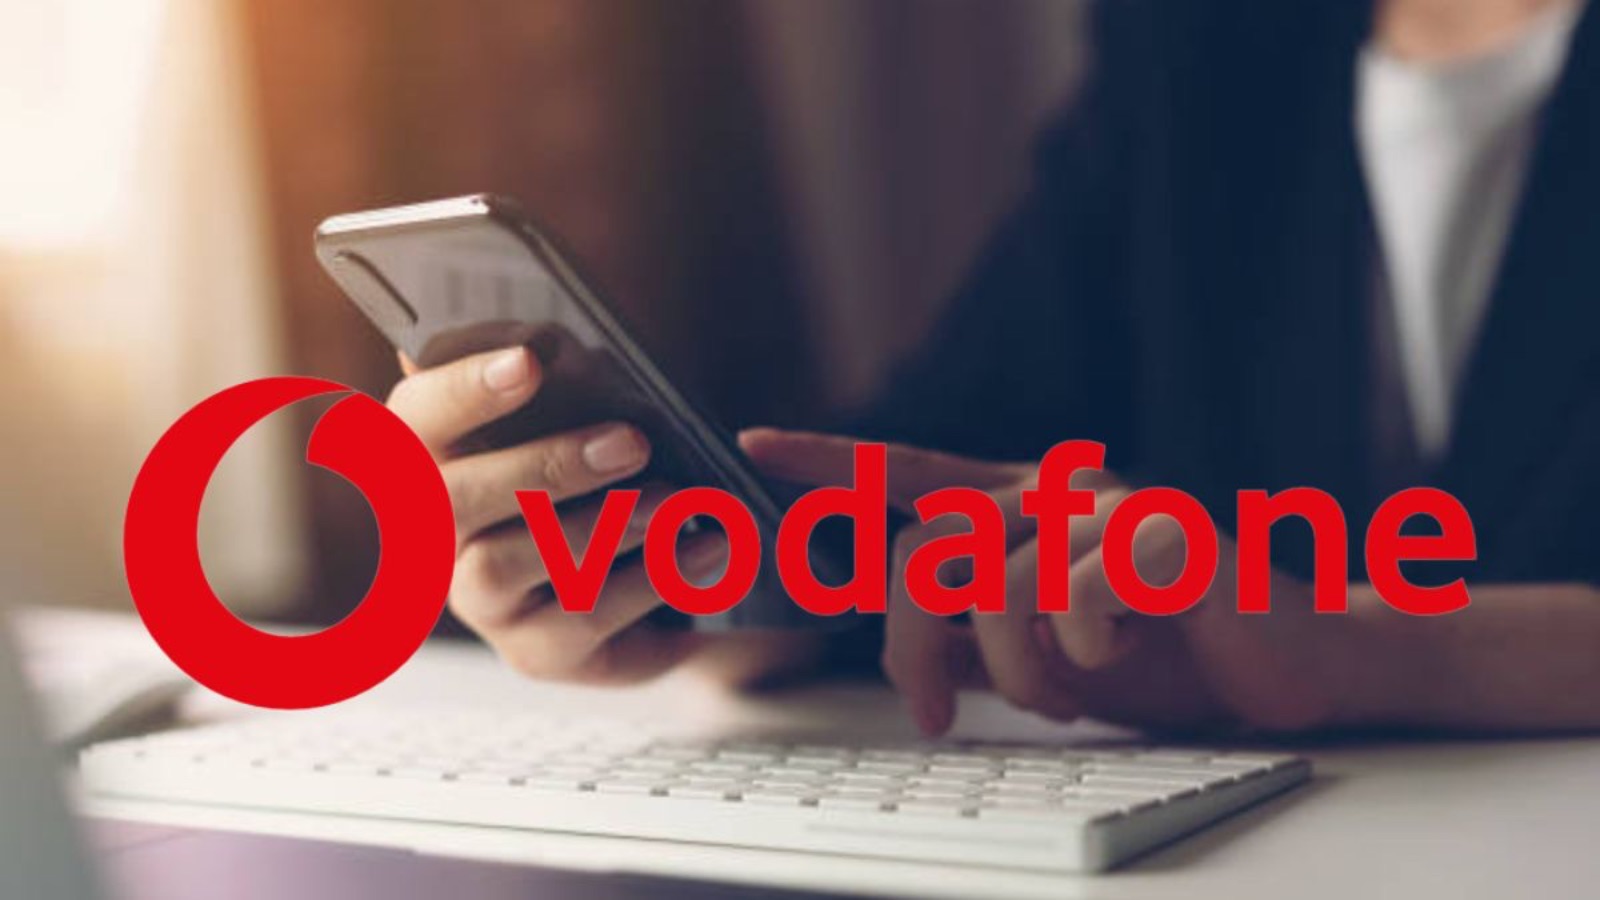 Vodafone offre il RIENTRO solo ad alcuni utenti, si parte da 7 EURO